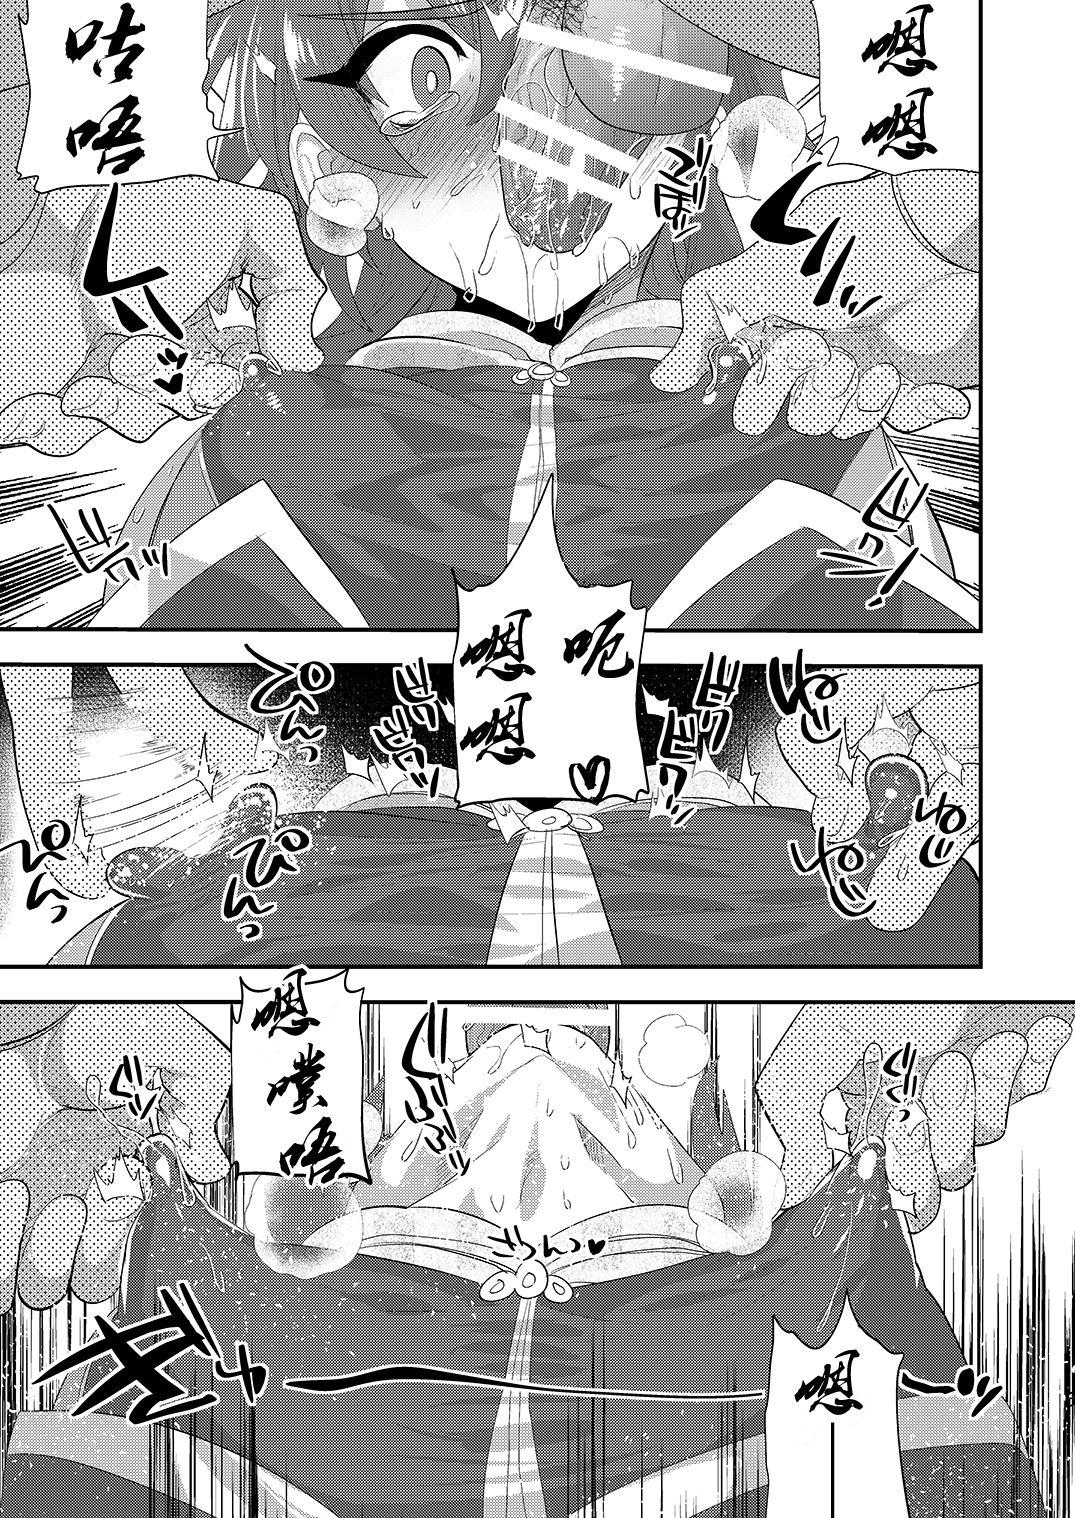 Str8 Kizuna LV0 no raama ou to himitsuno omajinai - Fate grand order Huge Cock - Page 6